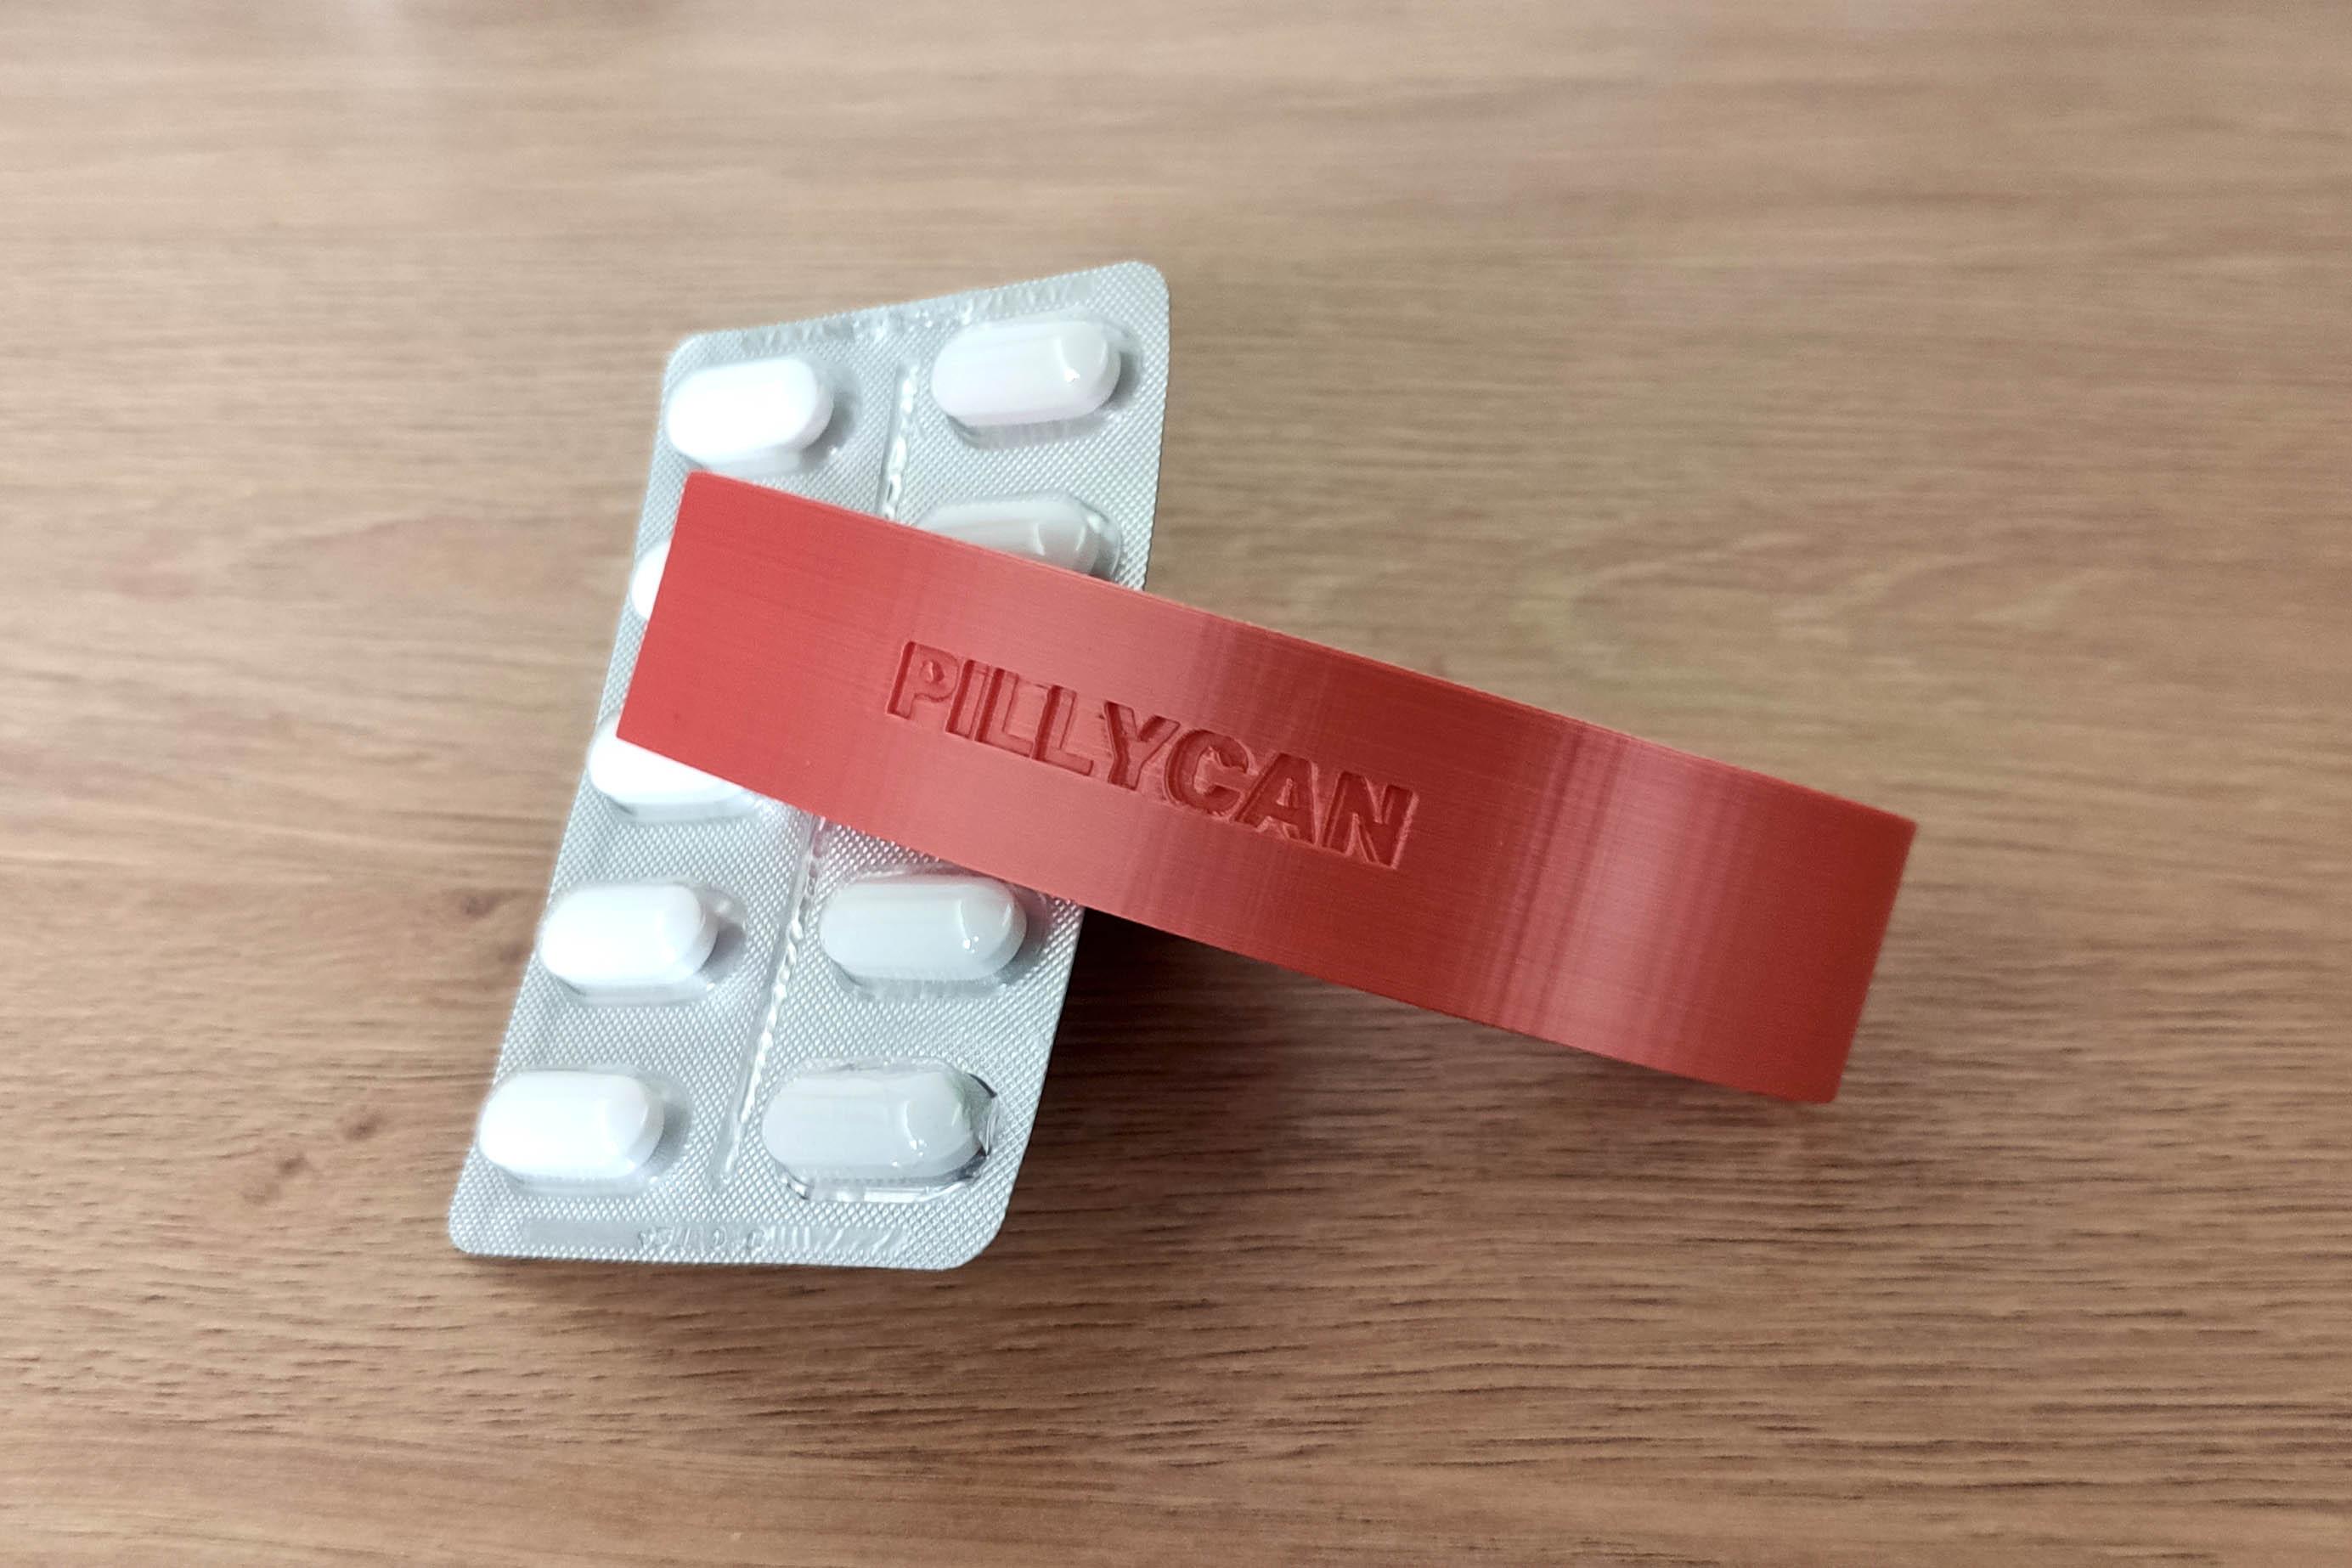 Pillikan - Easy to print pill puncher 3d model